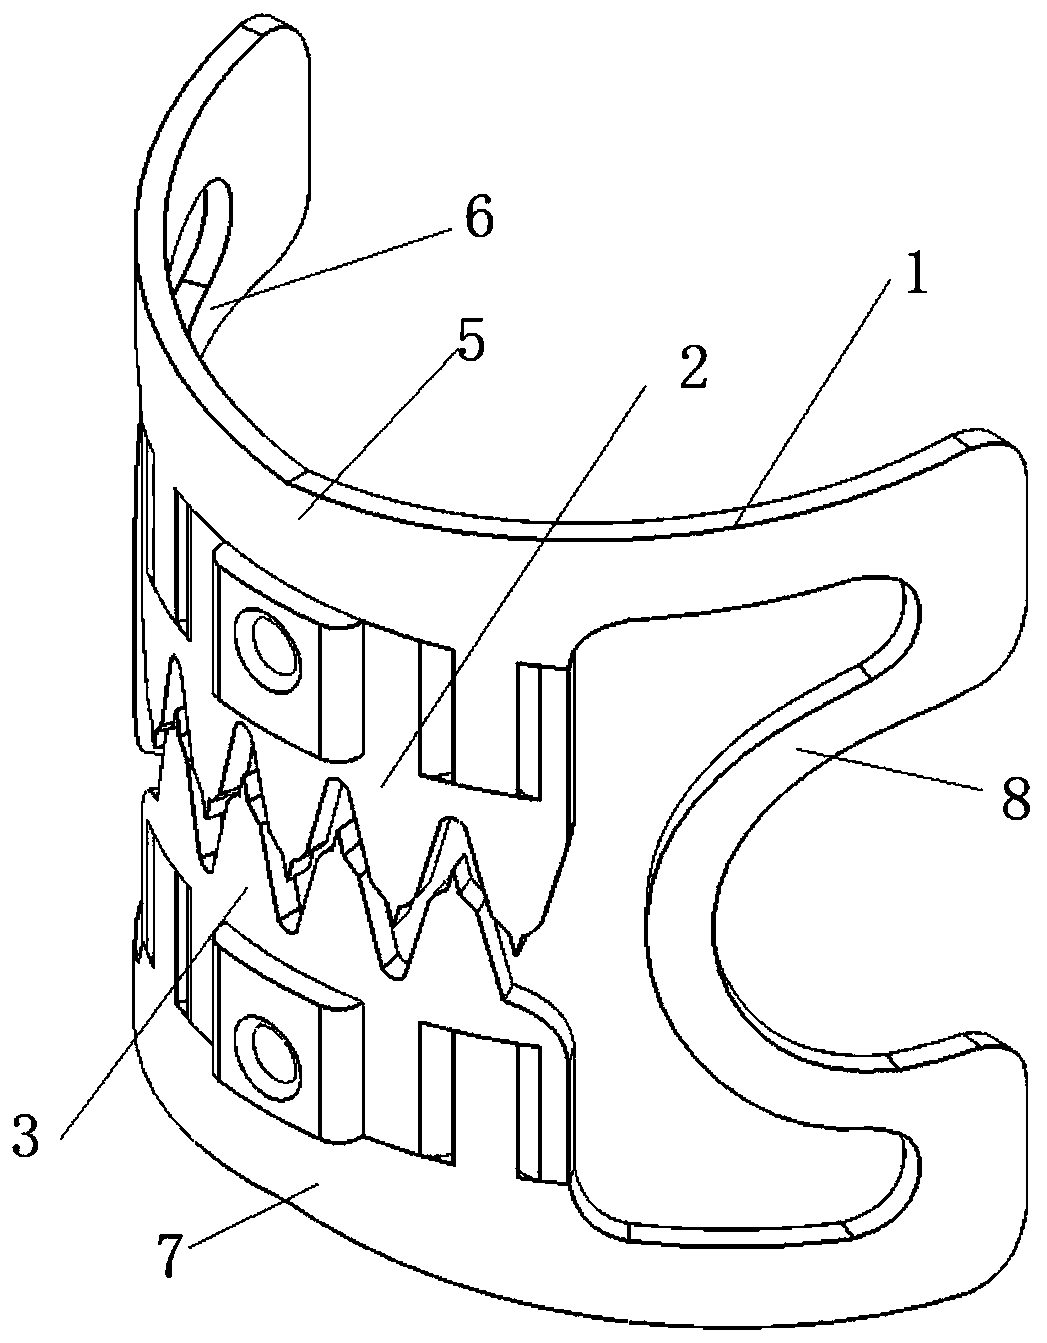 Detachable anastomosis clip